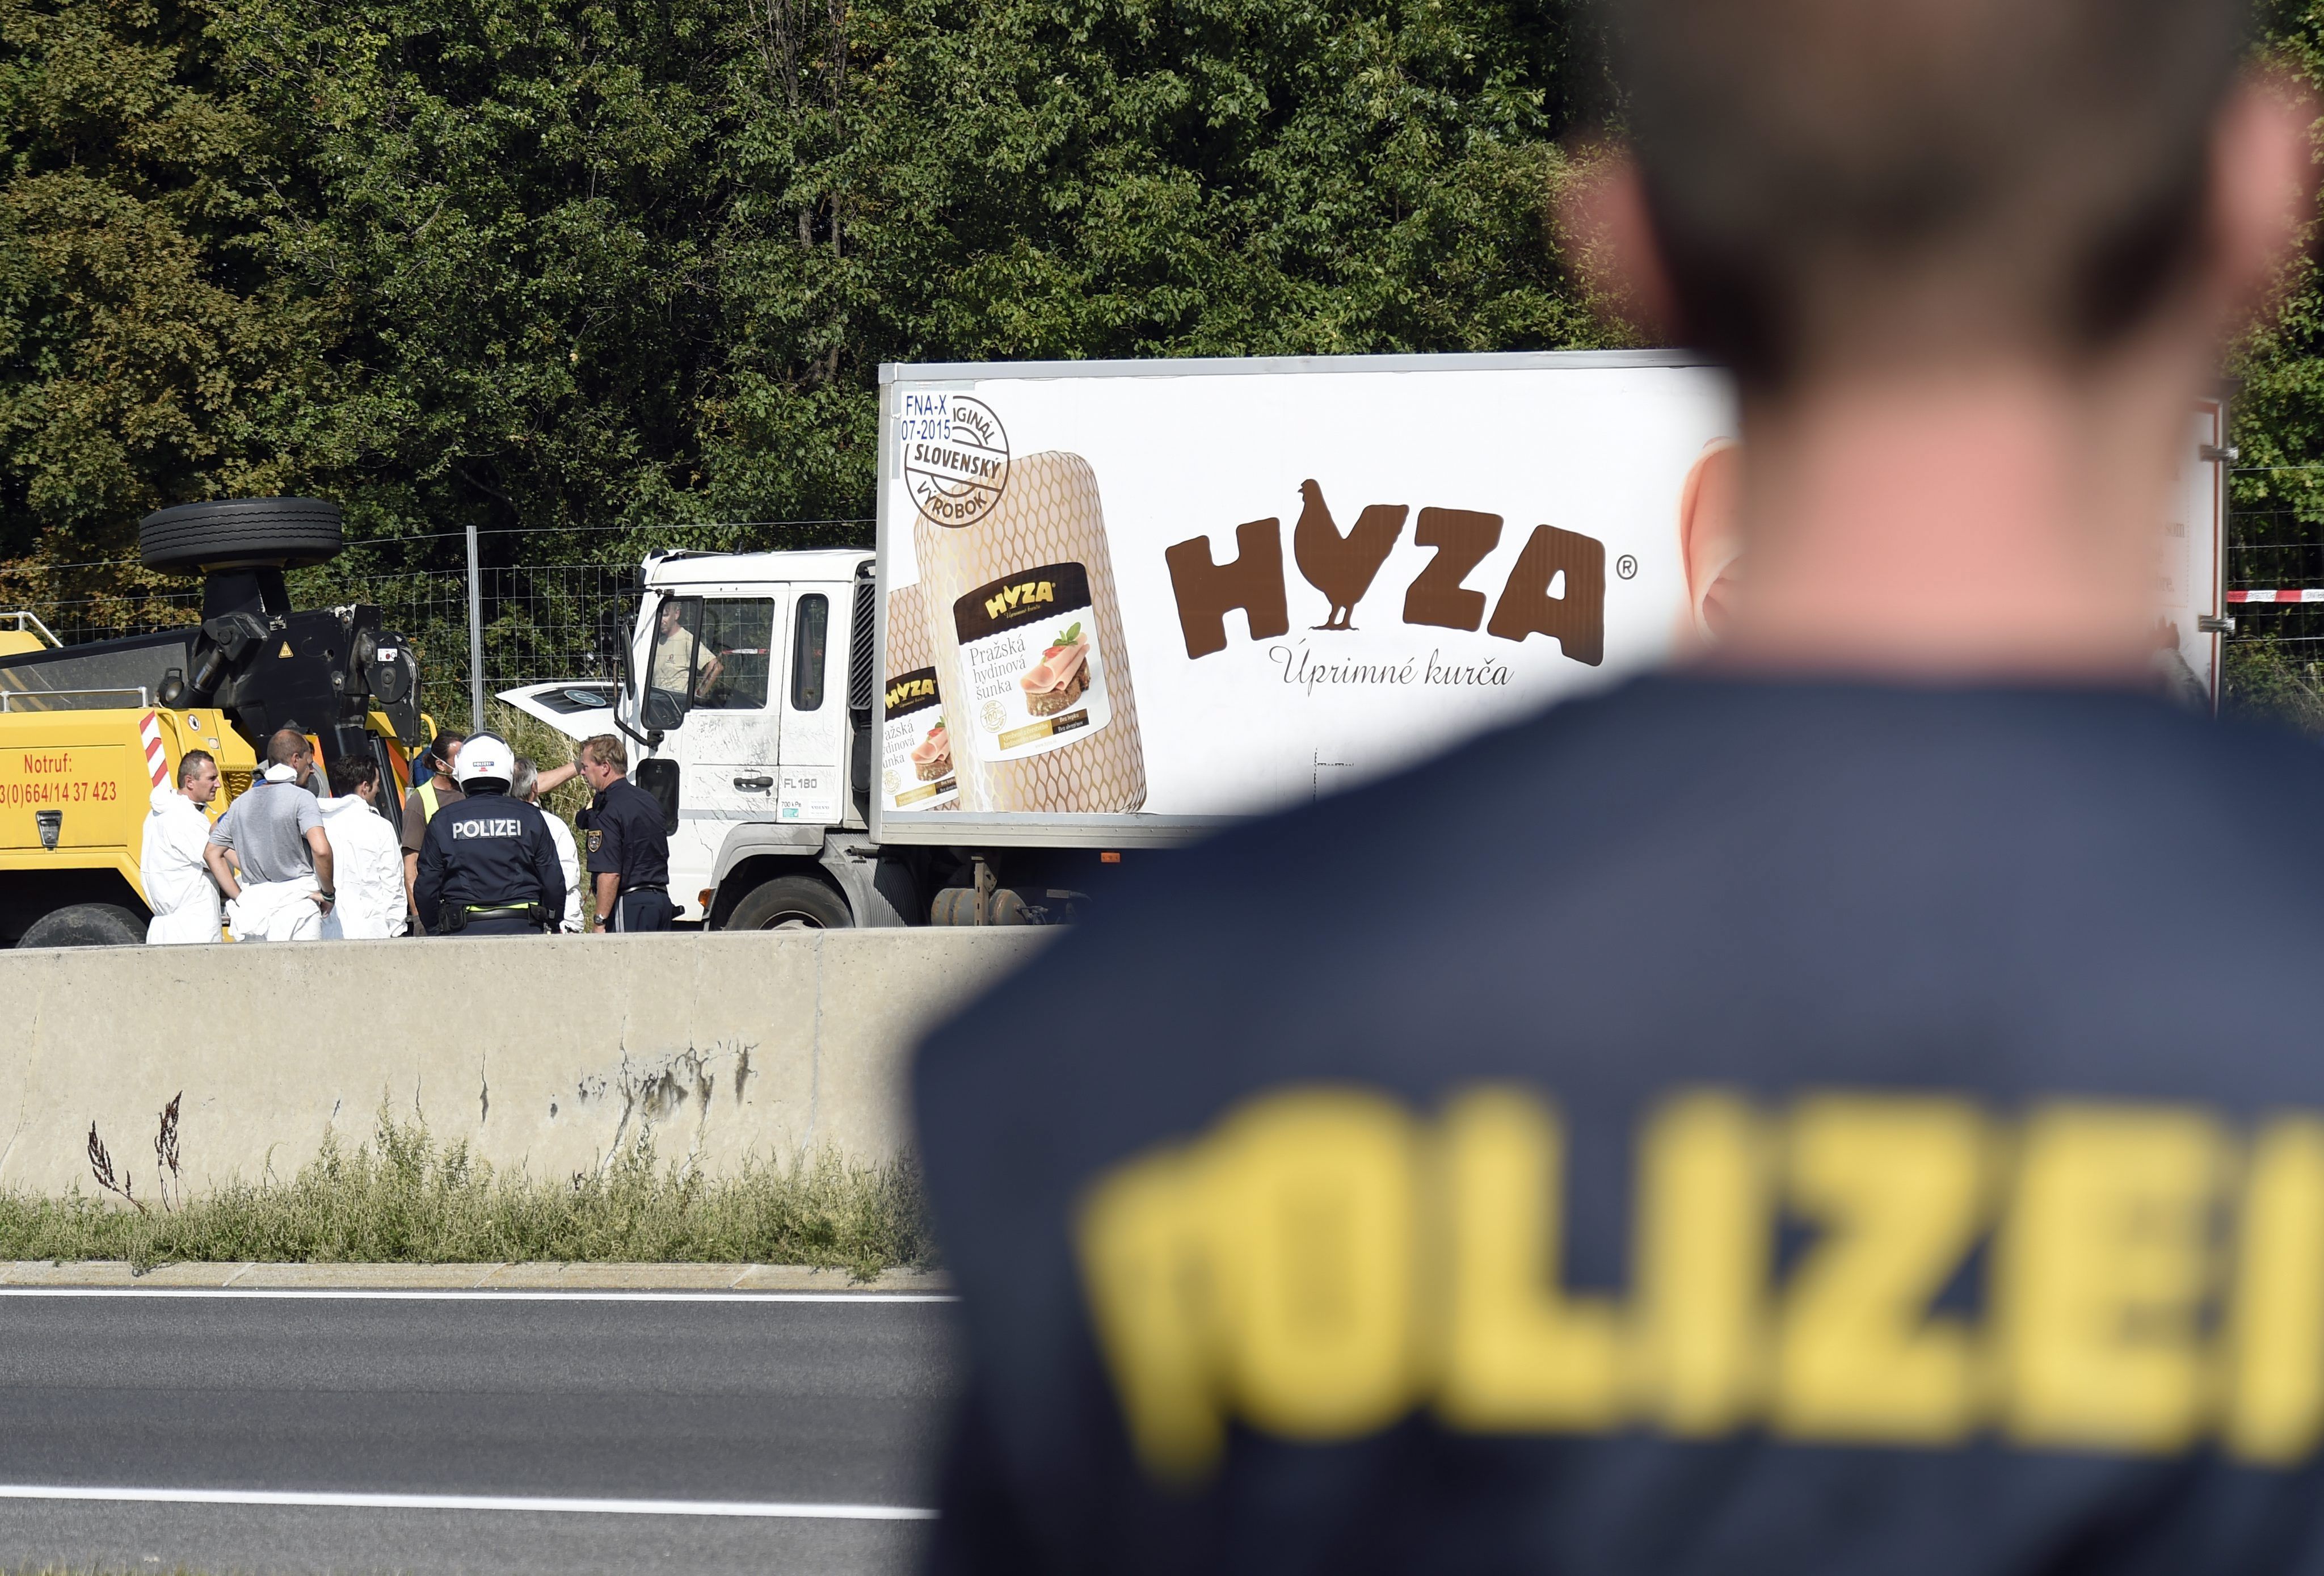 Камионът с бежанците е намерен на магистрала А4 между селищата Нойзидл и Парн